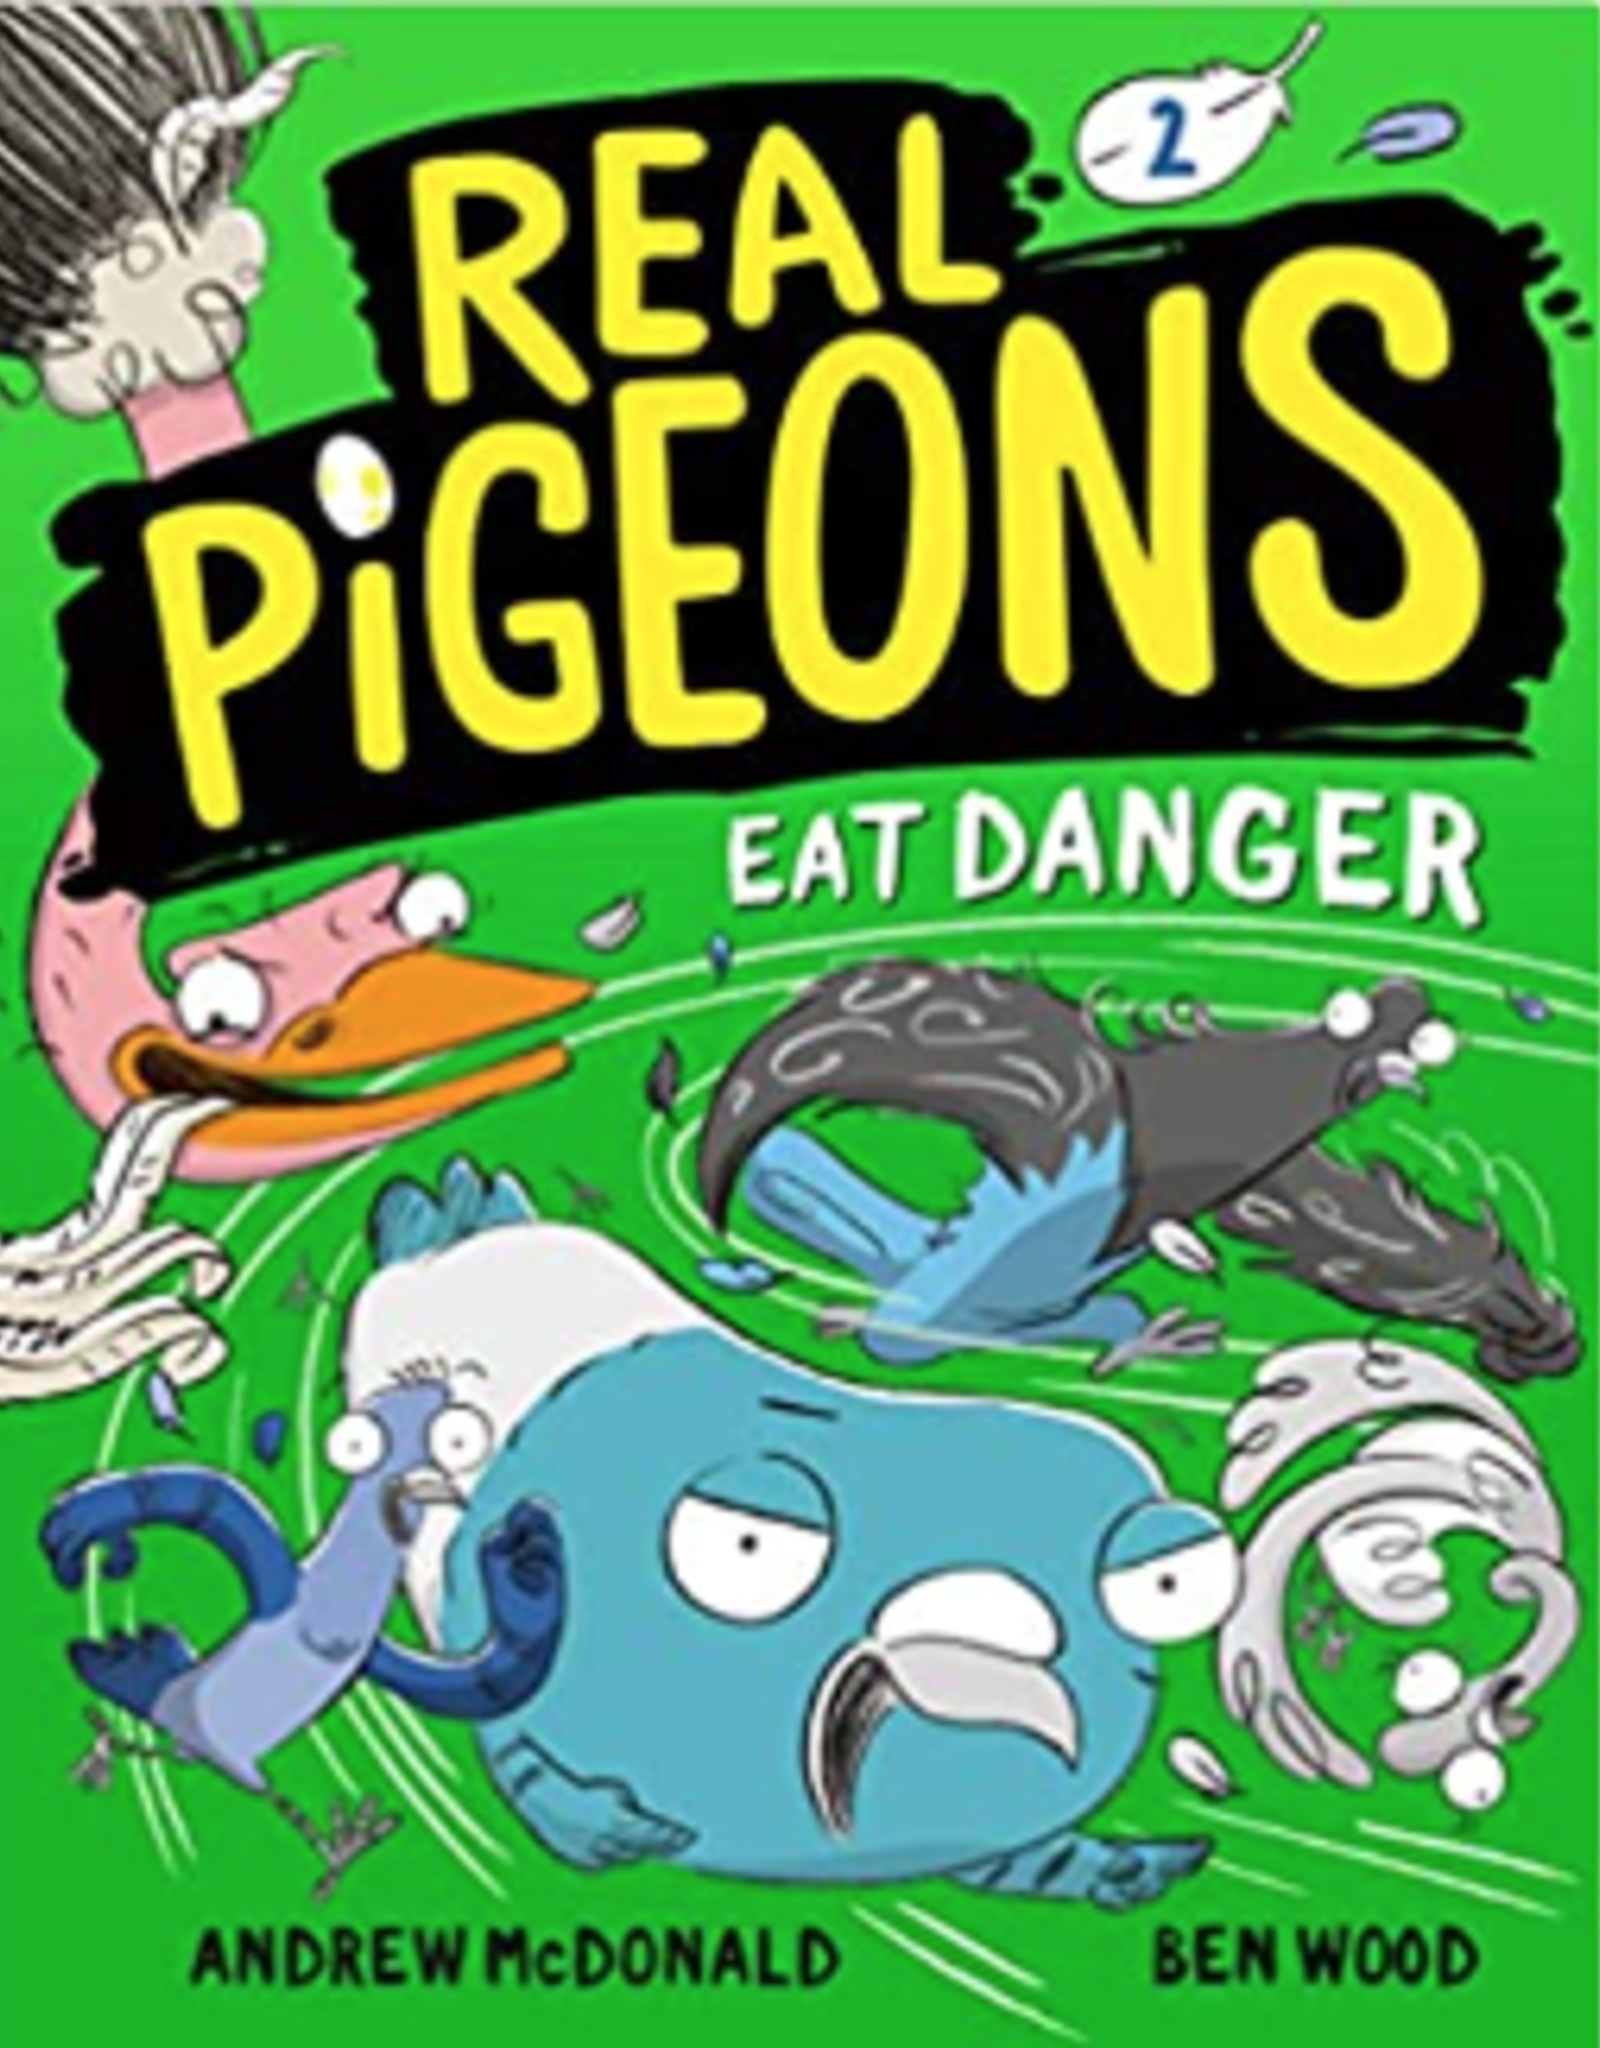 Real Pigeons Eat Danger vol 2